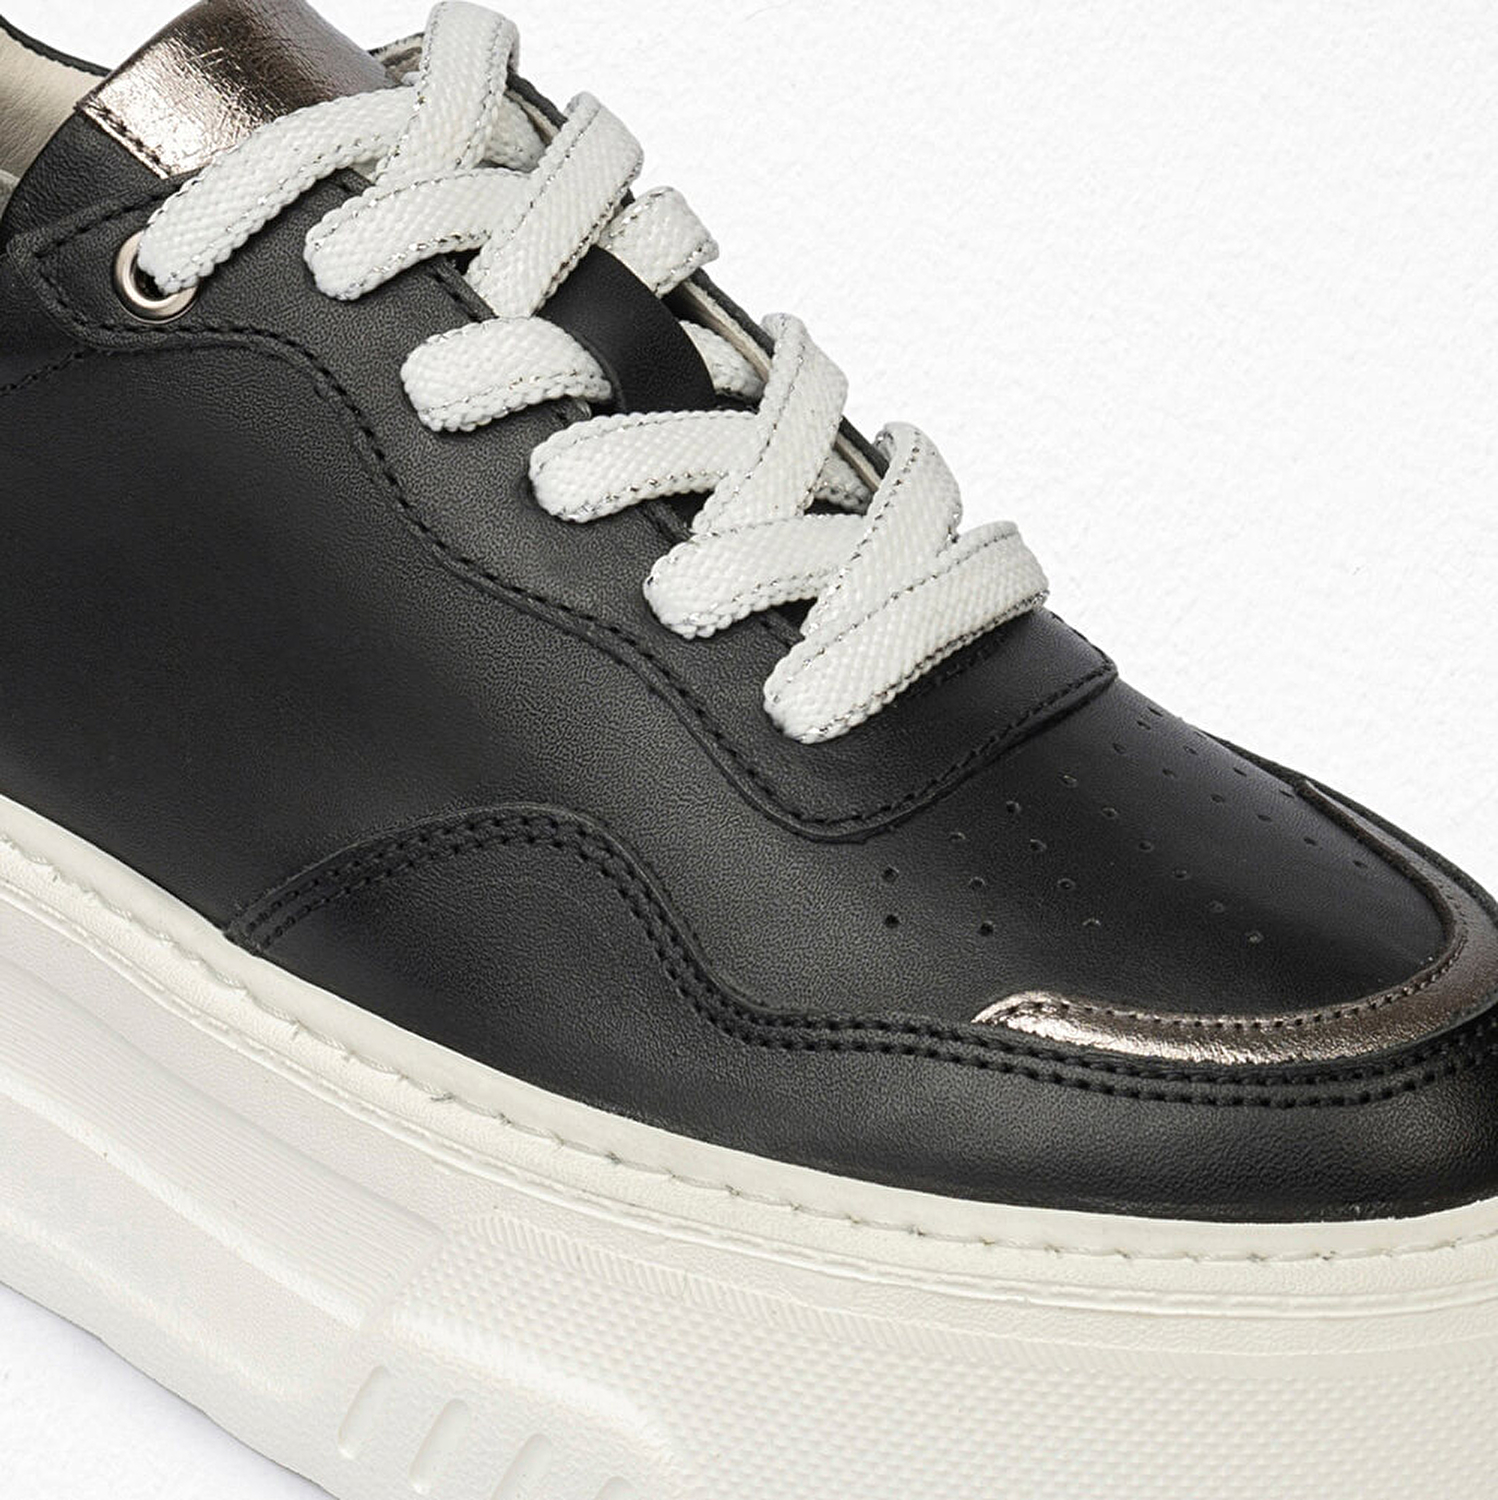 Kadın Siyah Çelik Hakiki Deri Sneaker Ayakkabı 4Y2SA59041-5